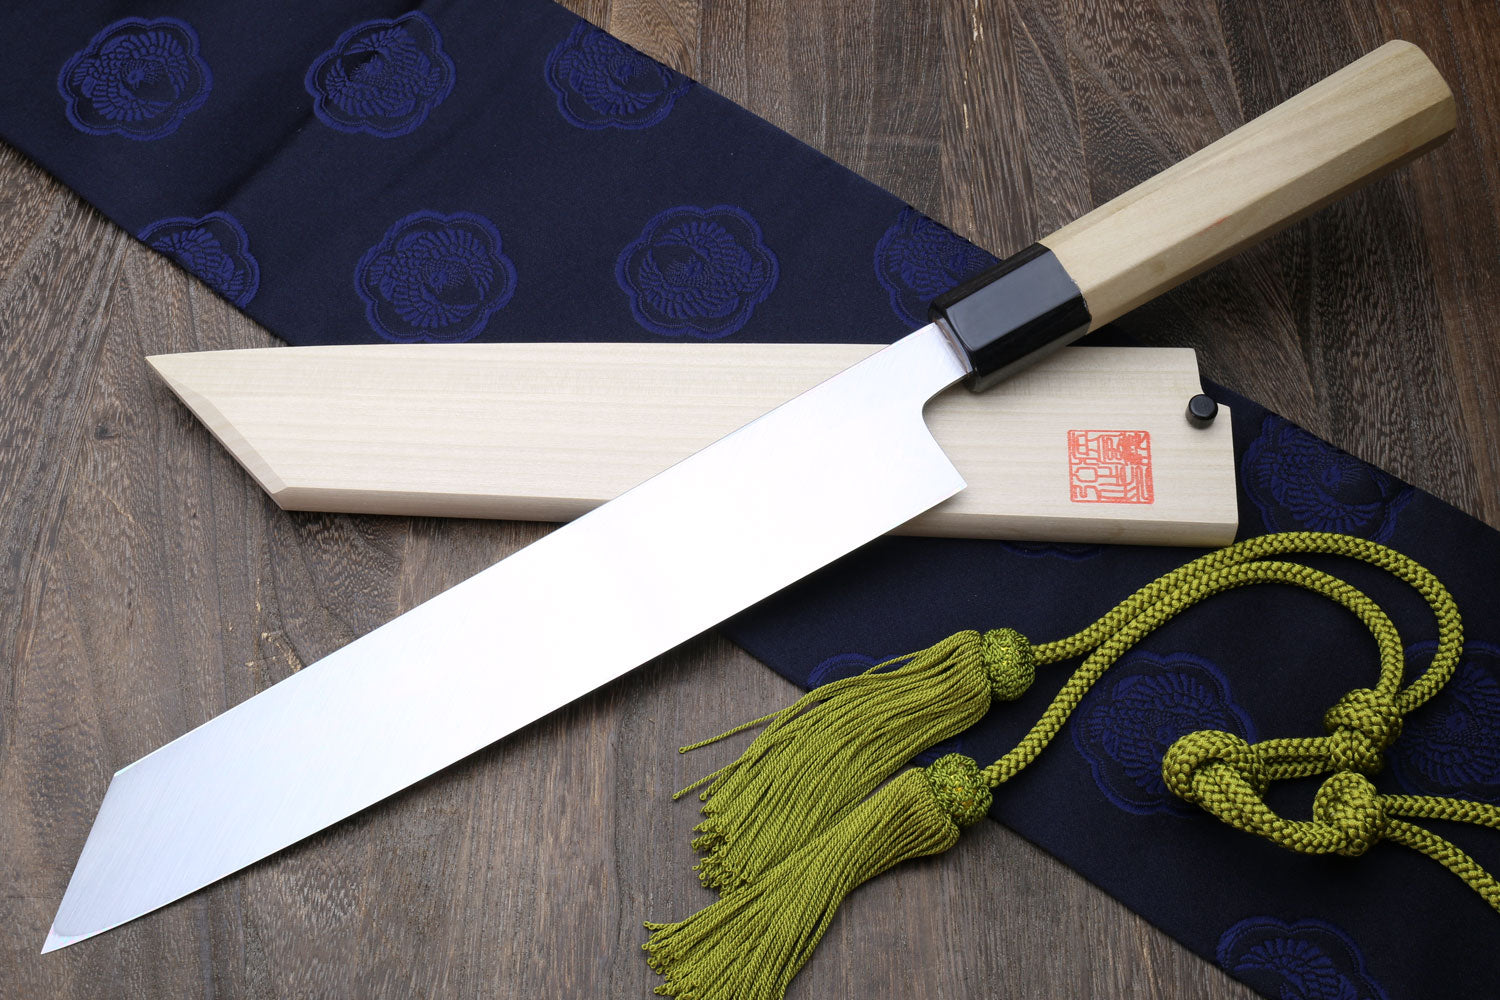 Japanese kitchen knife - Wikipedia